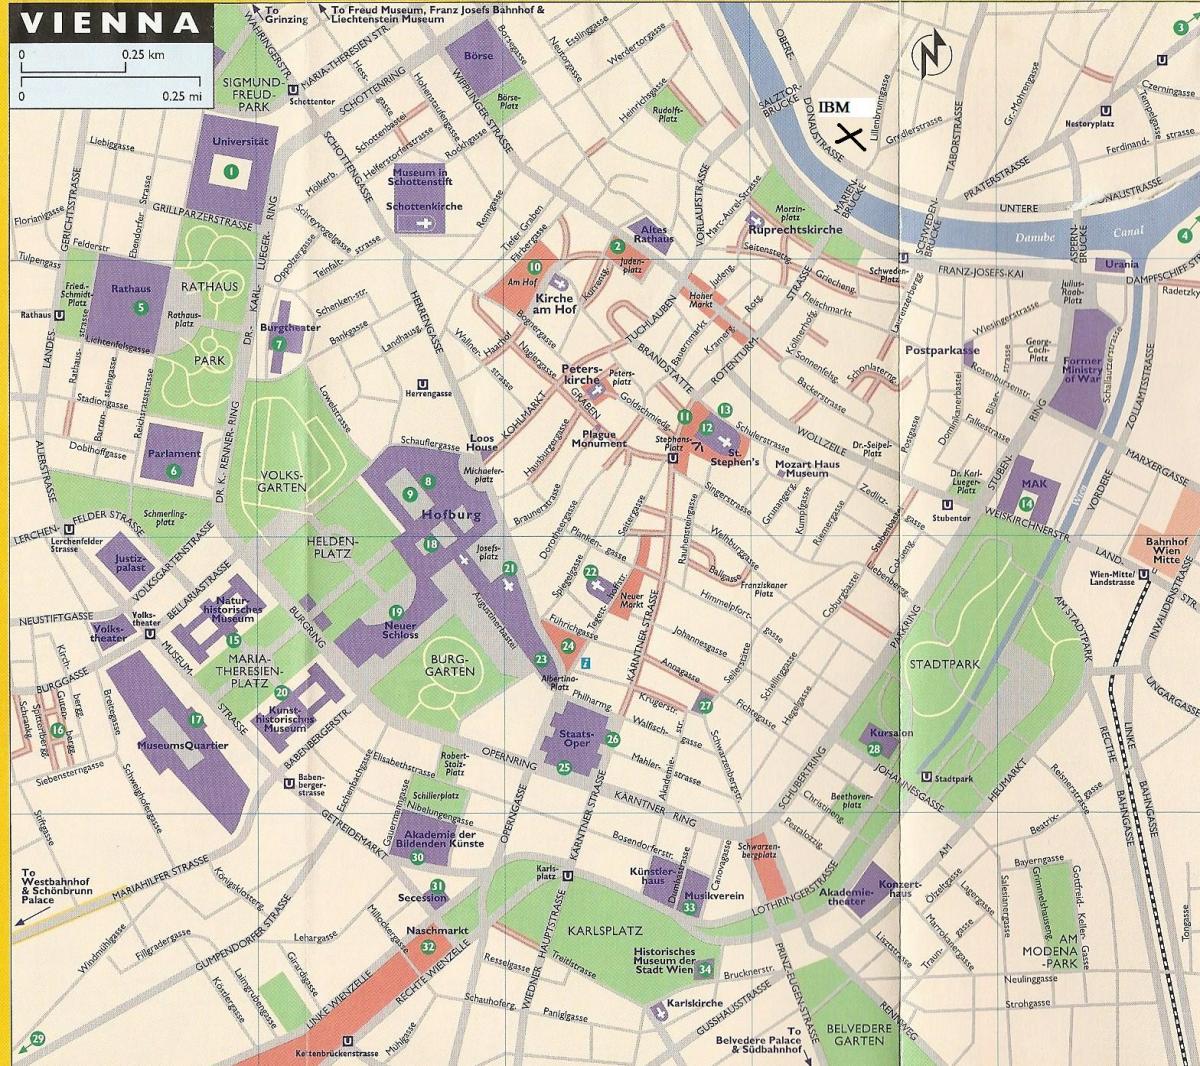 Karta över varuhus i Wien 